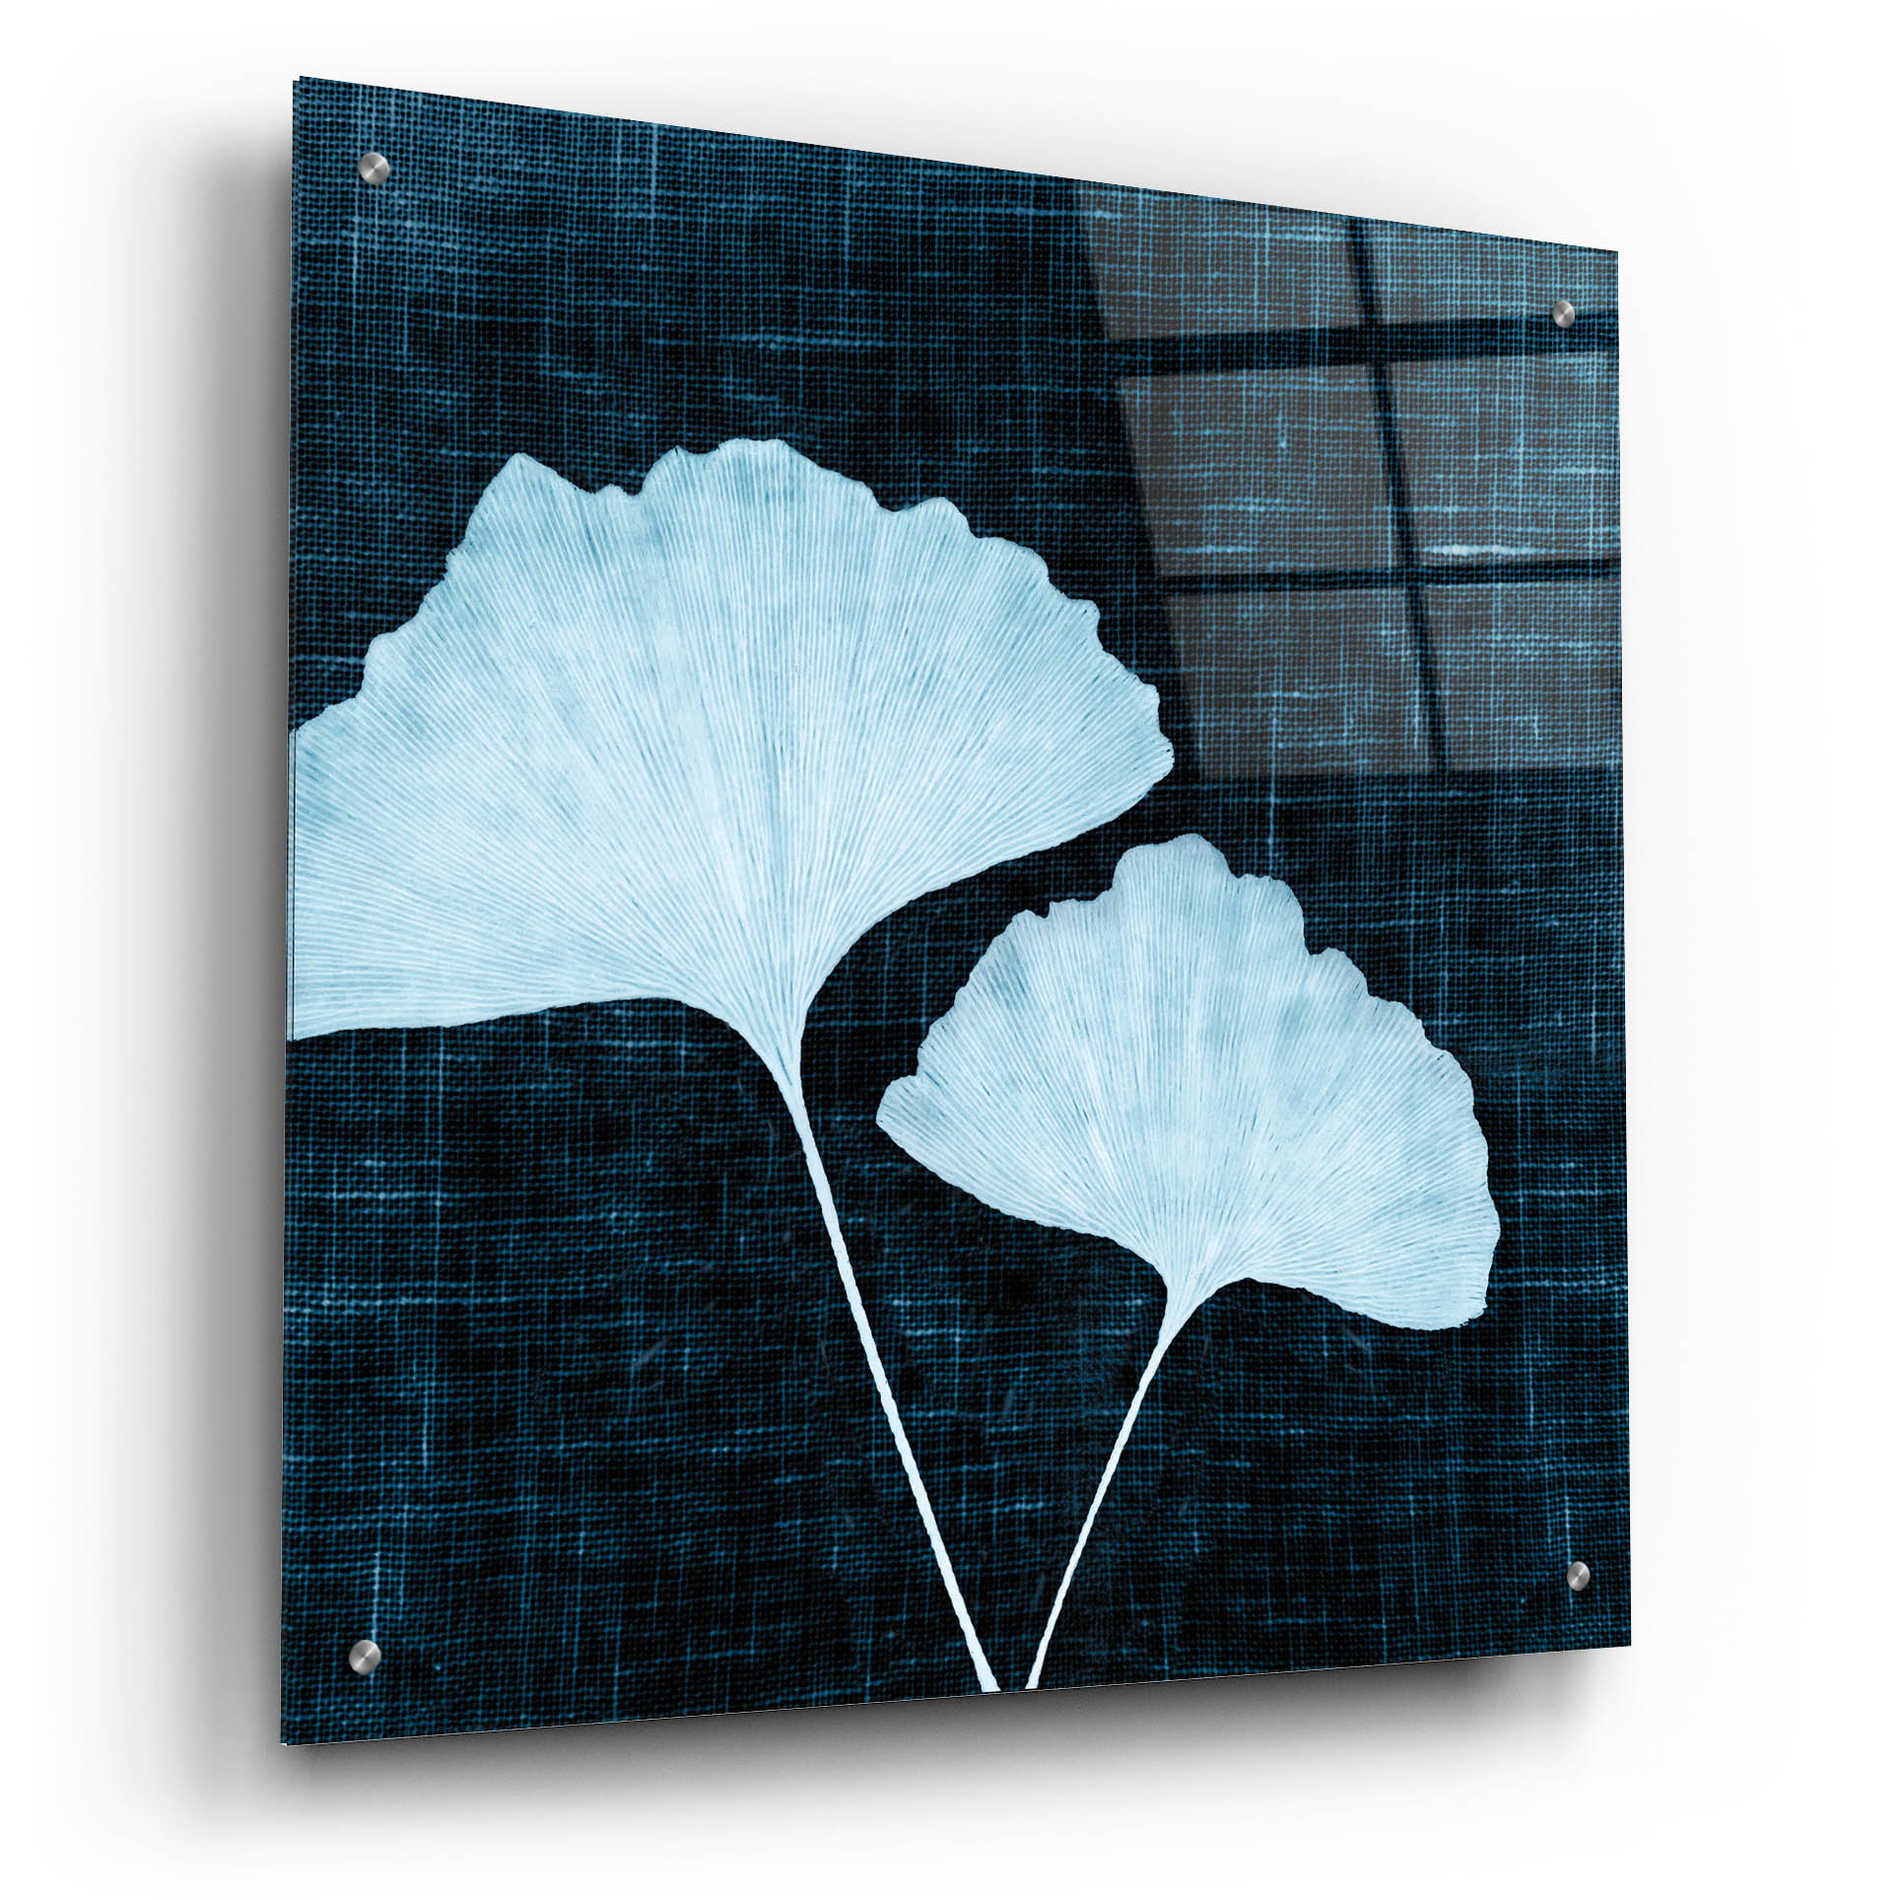 Epic Art 'Leaves on Linen I' by Debra Van Swearingen, Acrylic Glass Wall Art,24x24